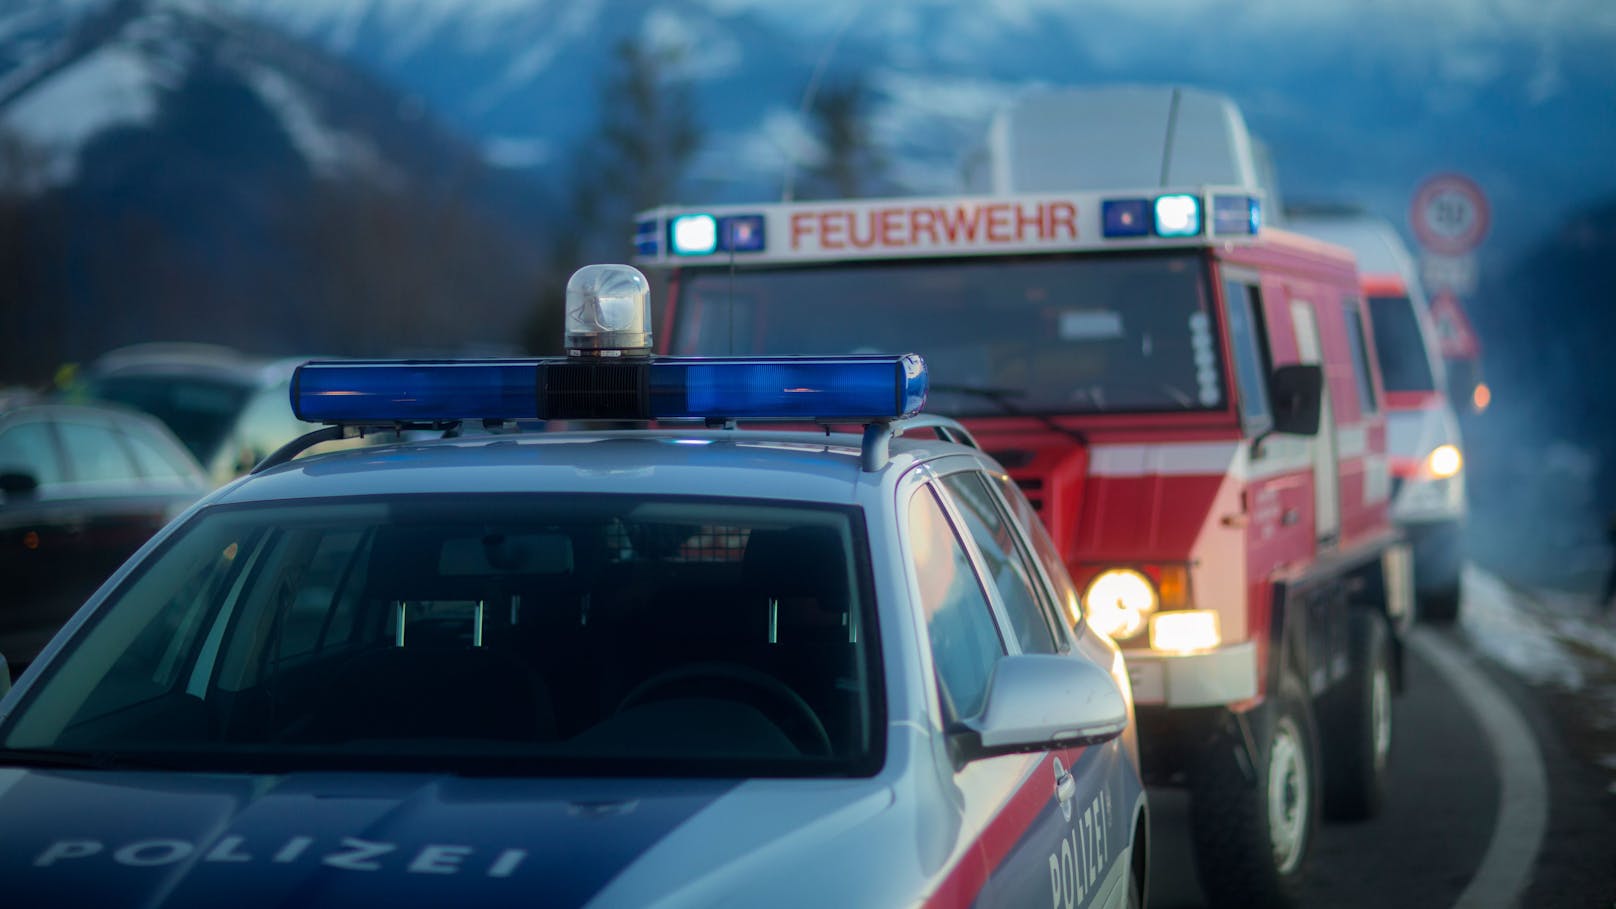 Polizei, Rettung und Feuerwehr mussten am Mittwochabend nach Eckberg ausrücken. (Symbolbild)